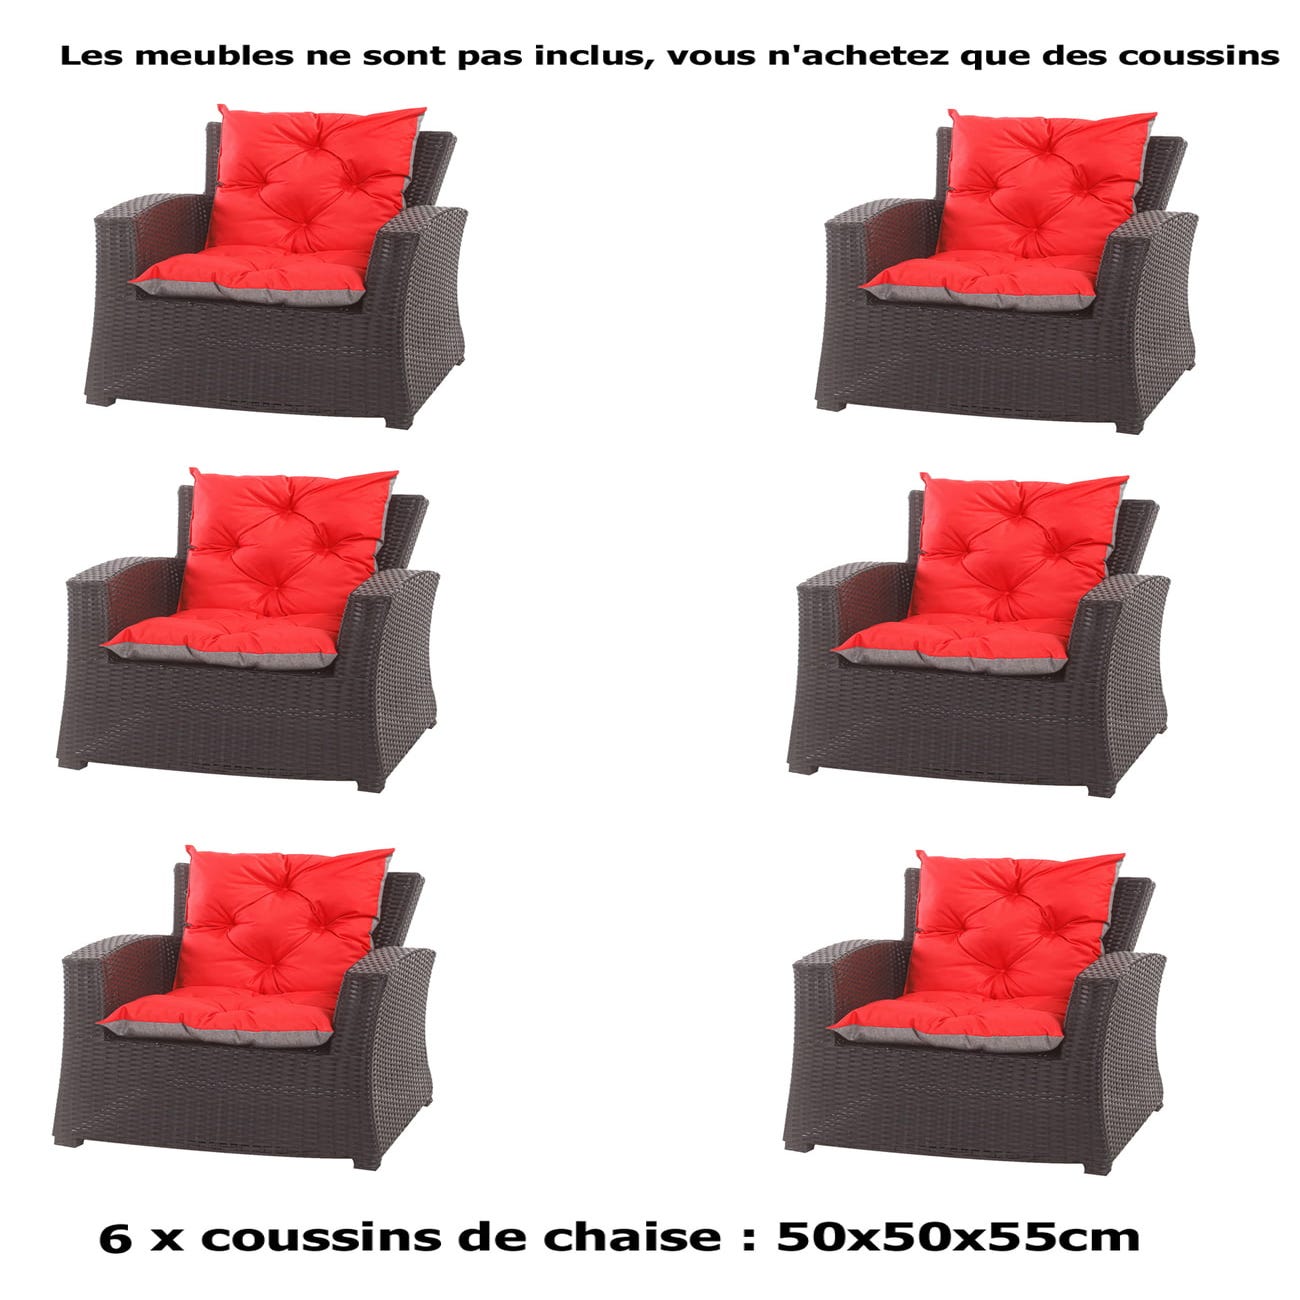 6 x Coussin pour chaise fauteuil de jardin 50x50x55cm - coussin de chaise  extérieur/intérieur Rouge